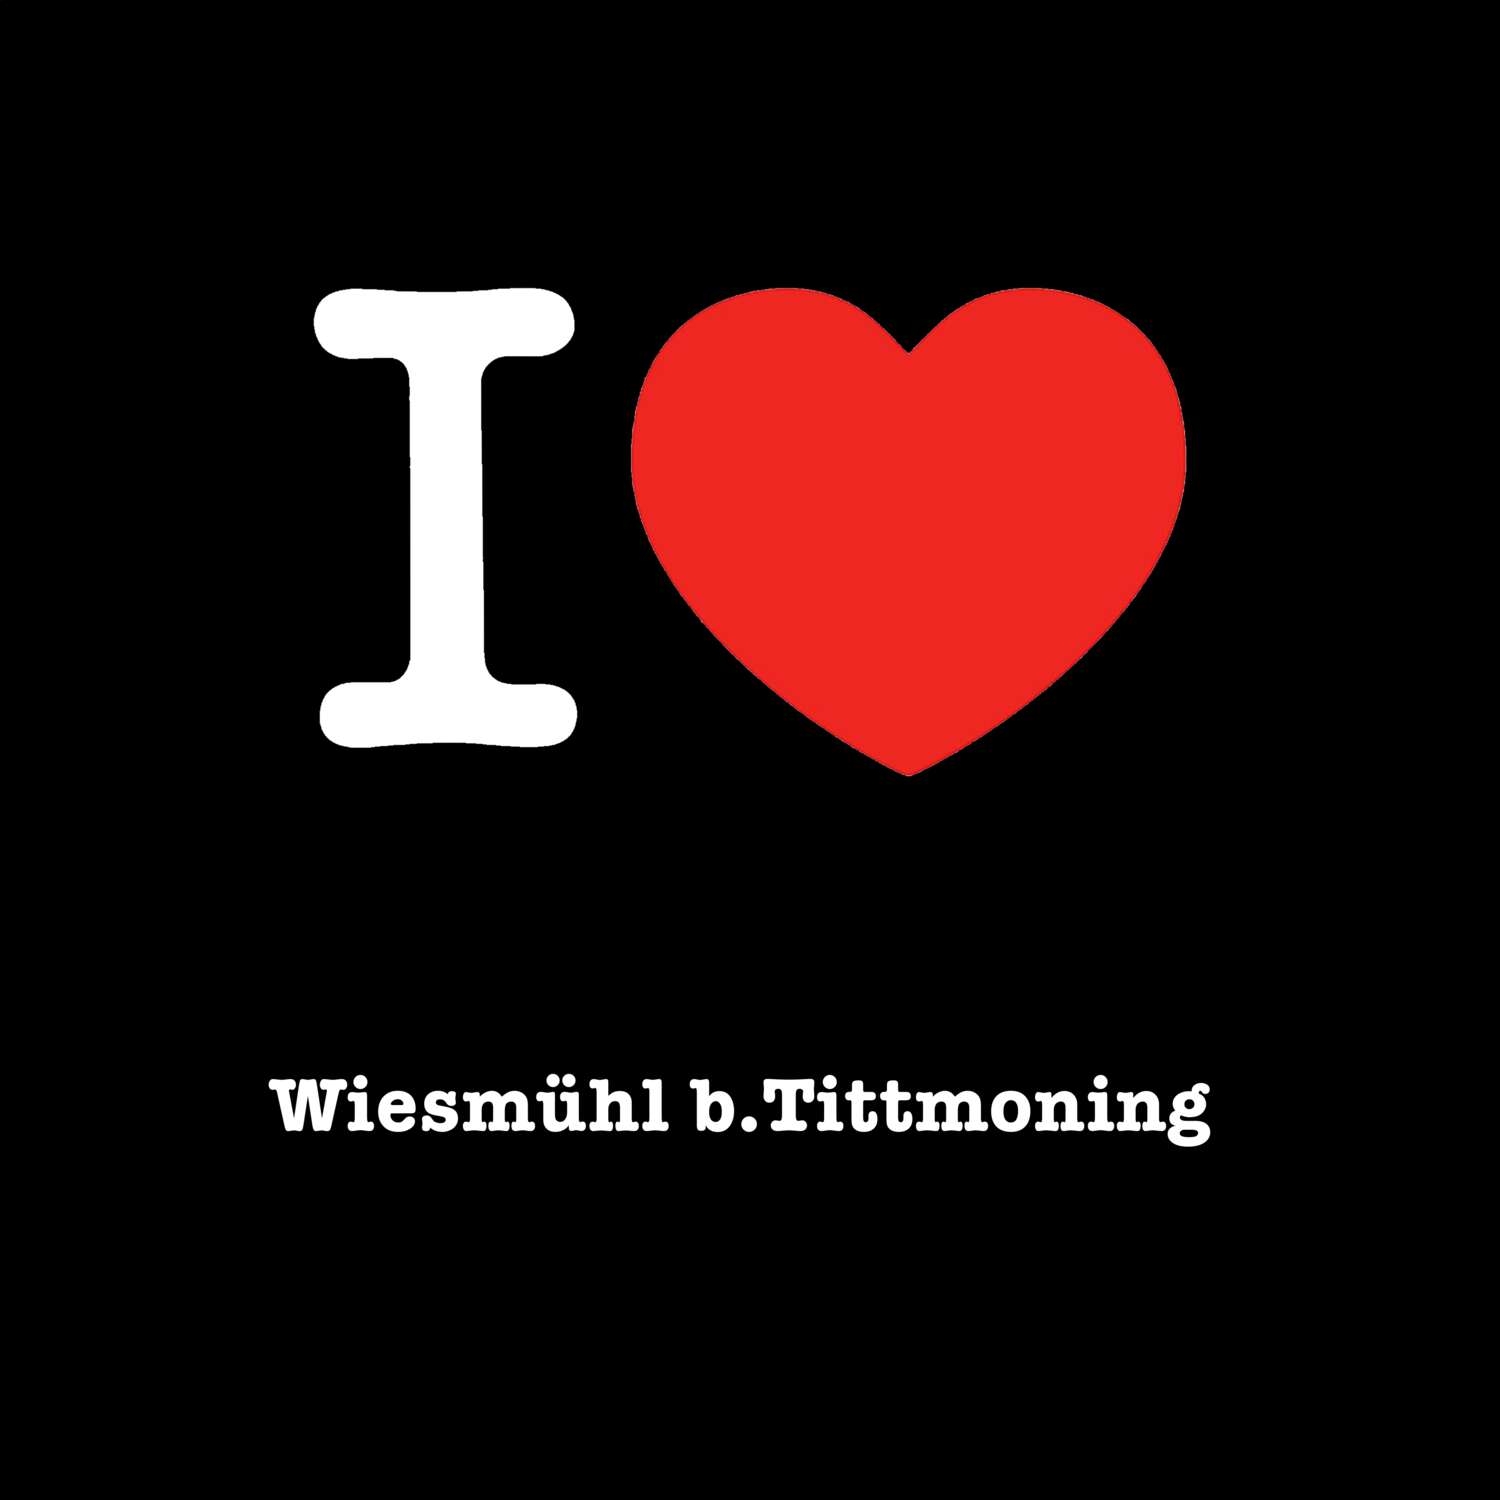 Wiesmühl b.Tittmoning T-Shirt »I love«